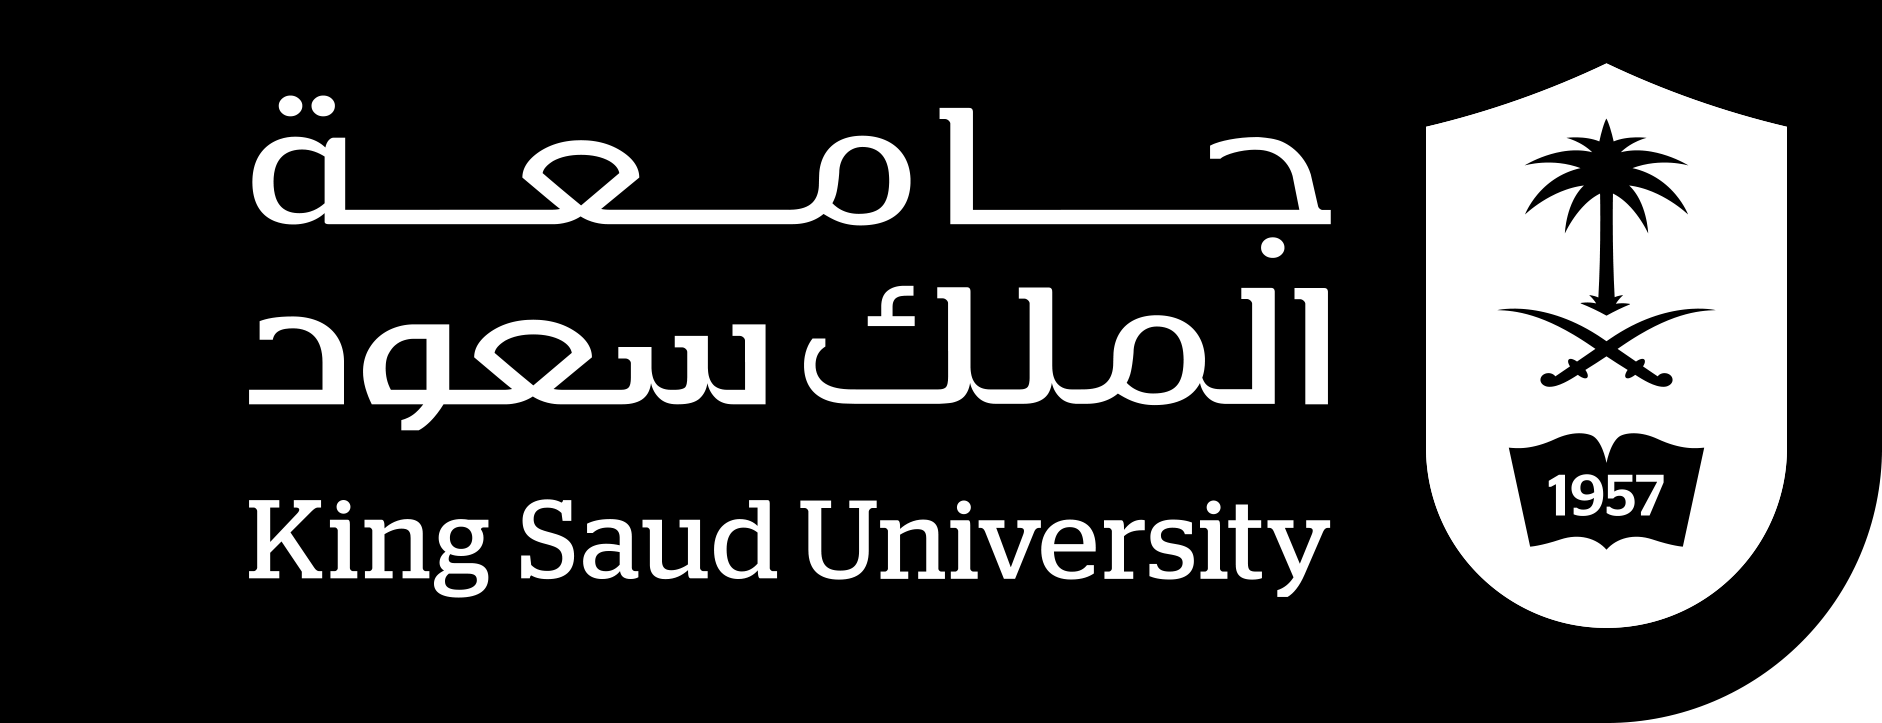 الشعار الجديد بالأبيض والأسود لجامعة الملك سعود